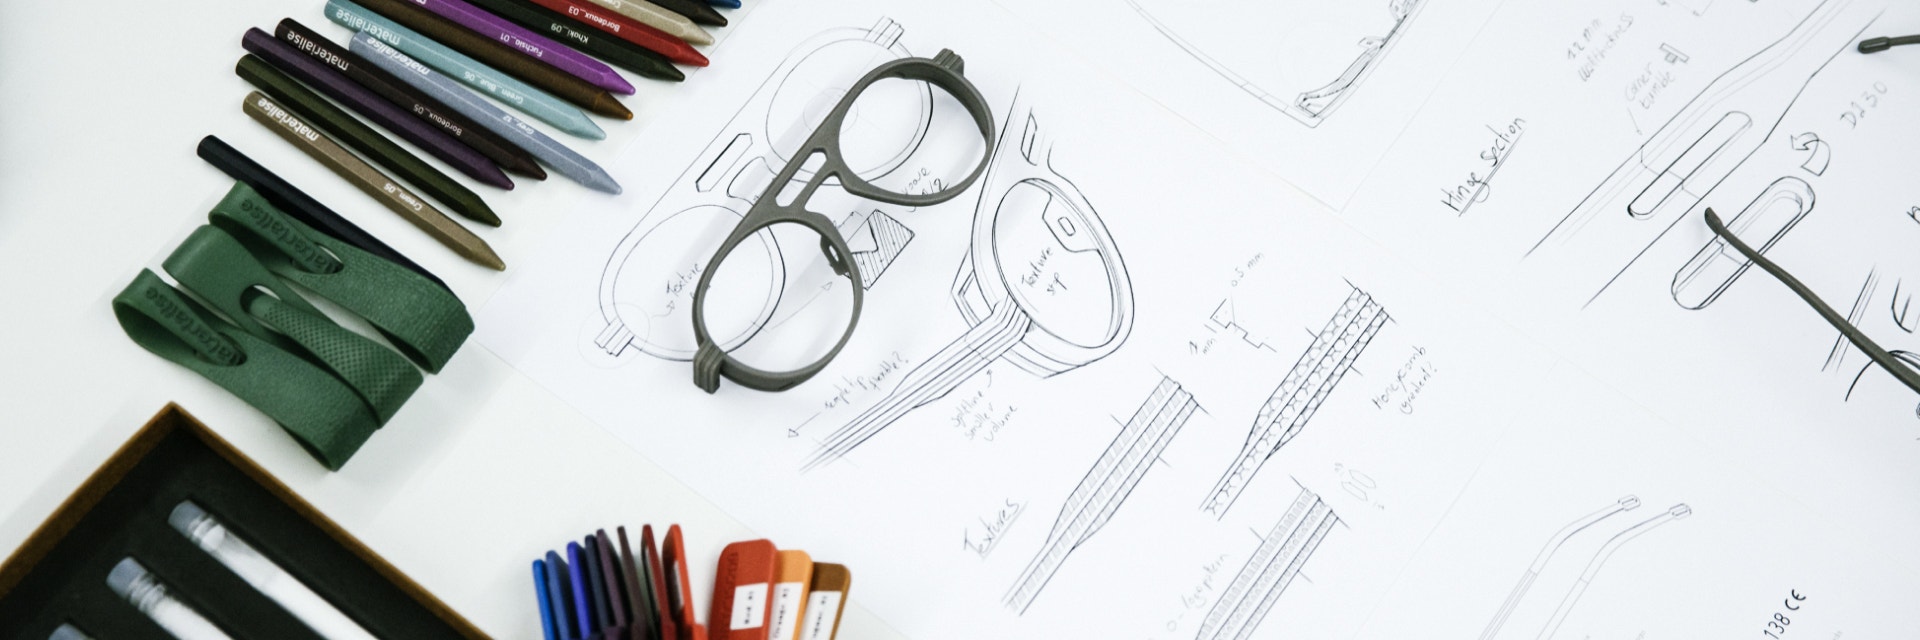 3D-gedruckte Brillen und Muster auf einem mit Bunt- und Kugelschreibern gezeichneten Entwurf